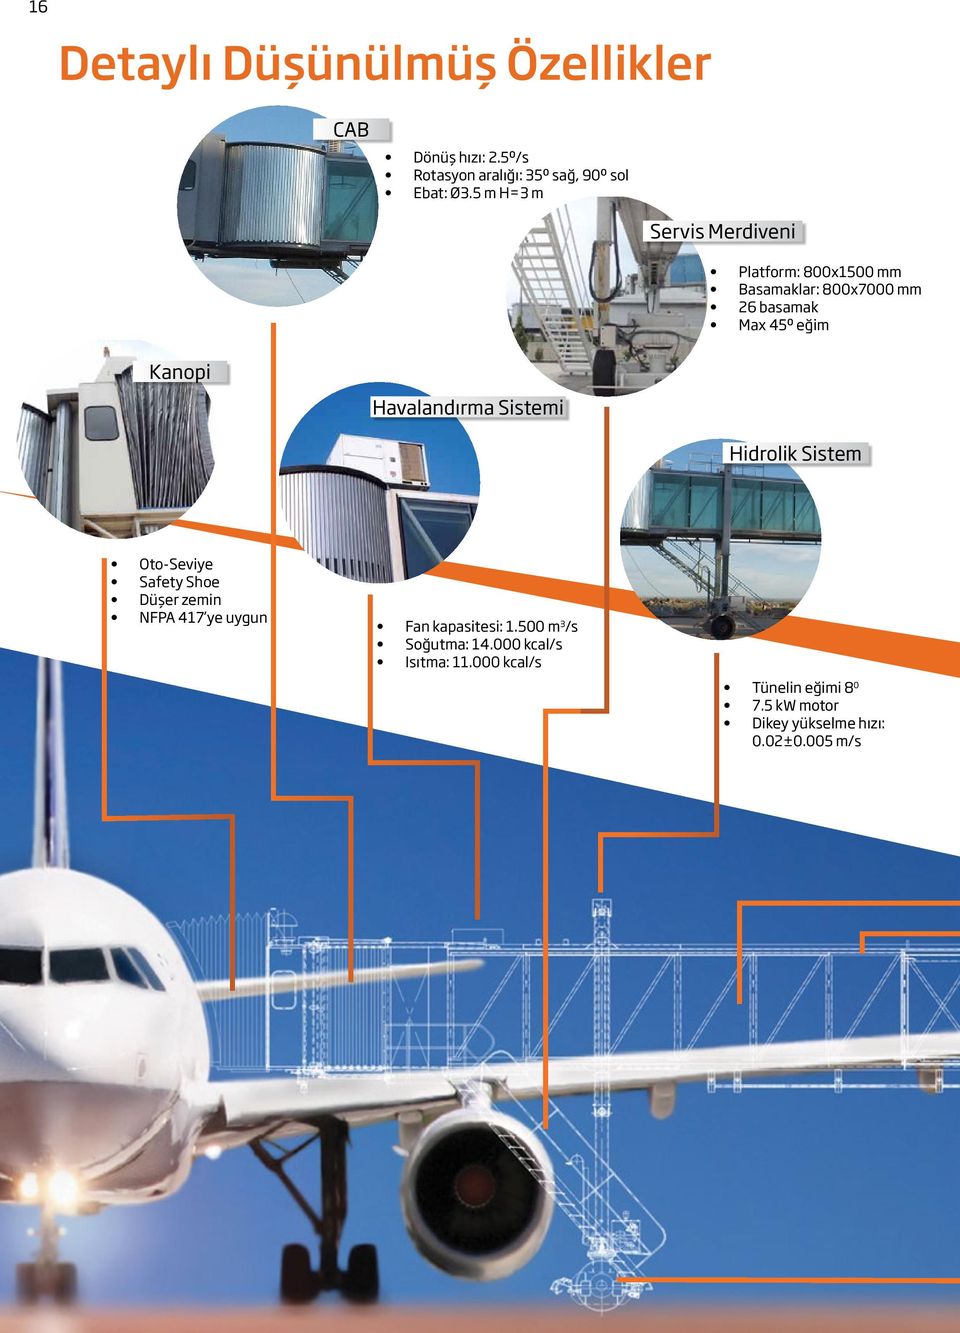 Havalandırma Sistemi Hidrolik Sistem Oto-Seviye Safety Shoe Düşer zemin NFPA 417 ye uygun Fan kapasitesi: 1.